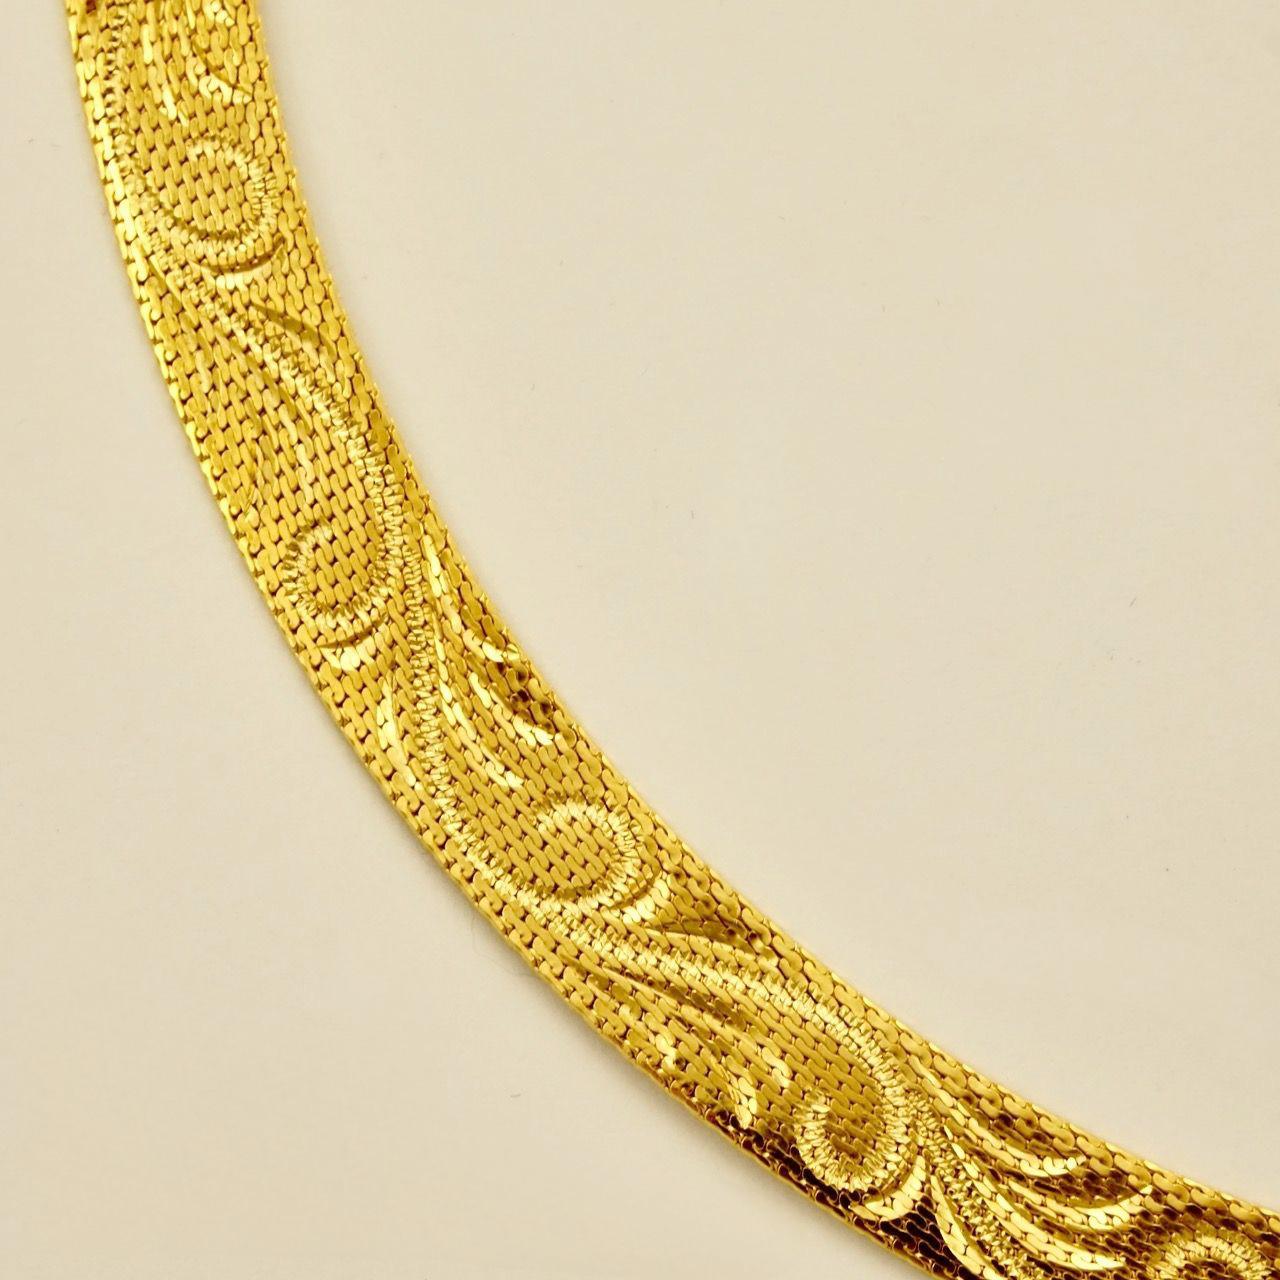 Magnifique collier en maille plaquée or brillant, orné d'un ravissant motif tourbillonnant. Longueur approximative de 38 cm / 15 pouces, plus une chaîne d'extension de 5,5 cm / 2 pouces, pour une largeur de 8 mm / .3 inch. Le collier est en très bon